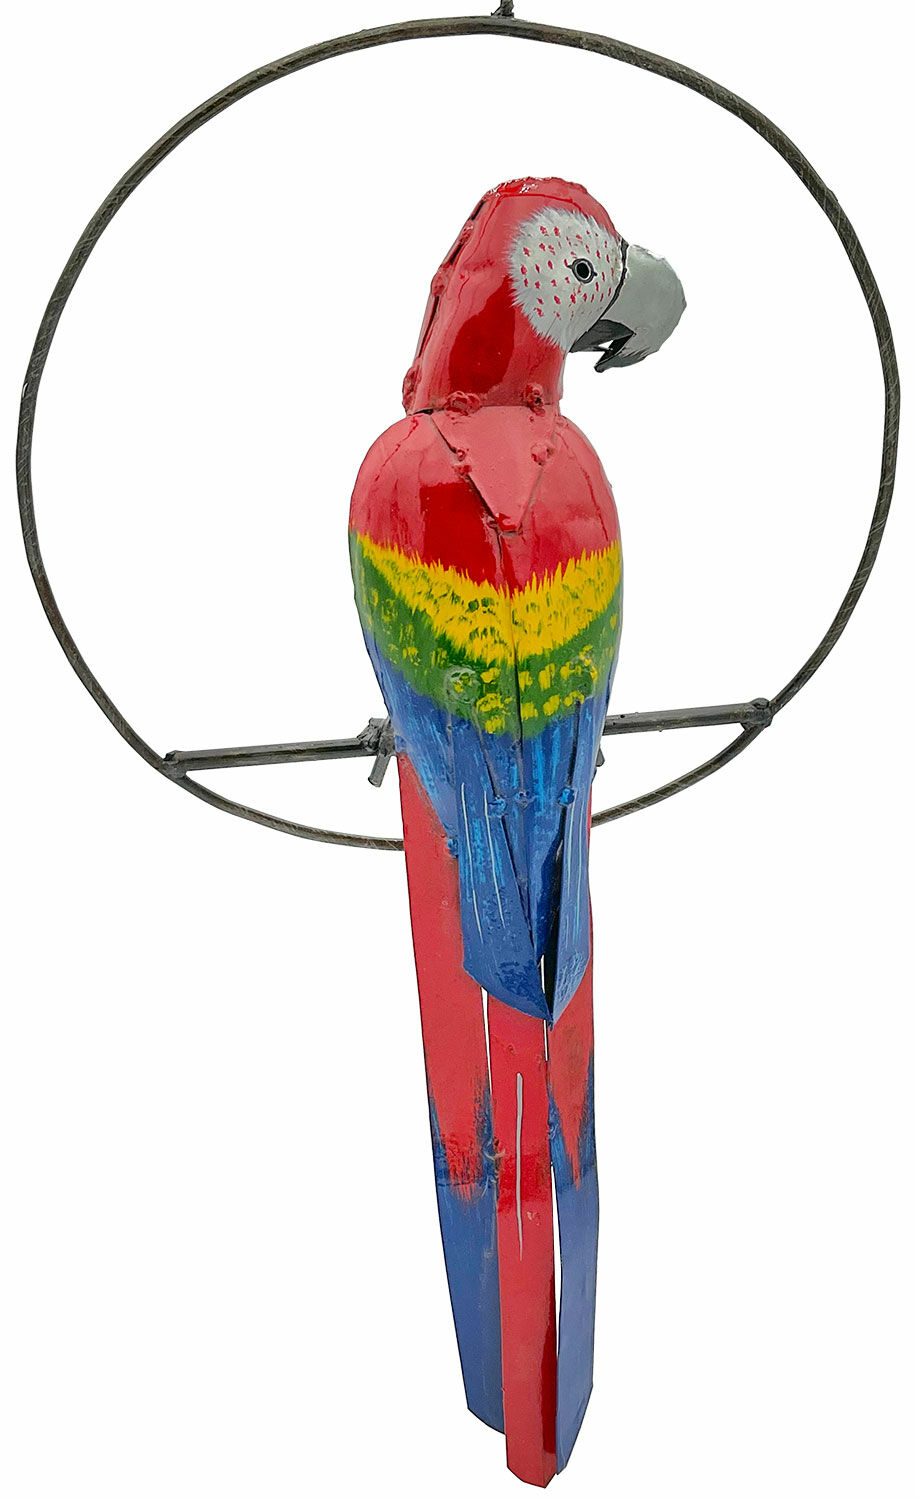 Ornement de jardin / décoration suspendue "Macaw in a Ring" (ara en anneau)